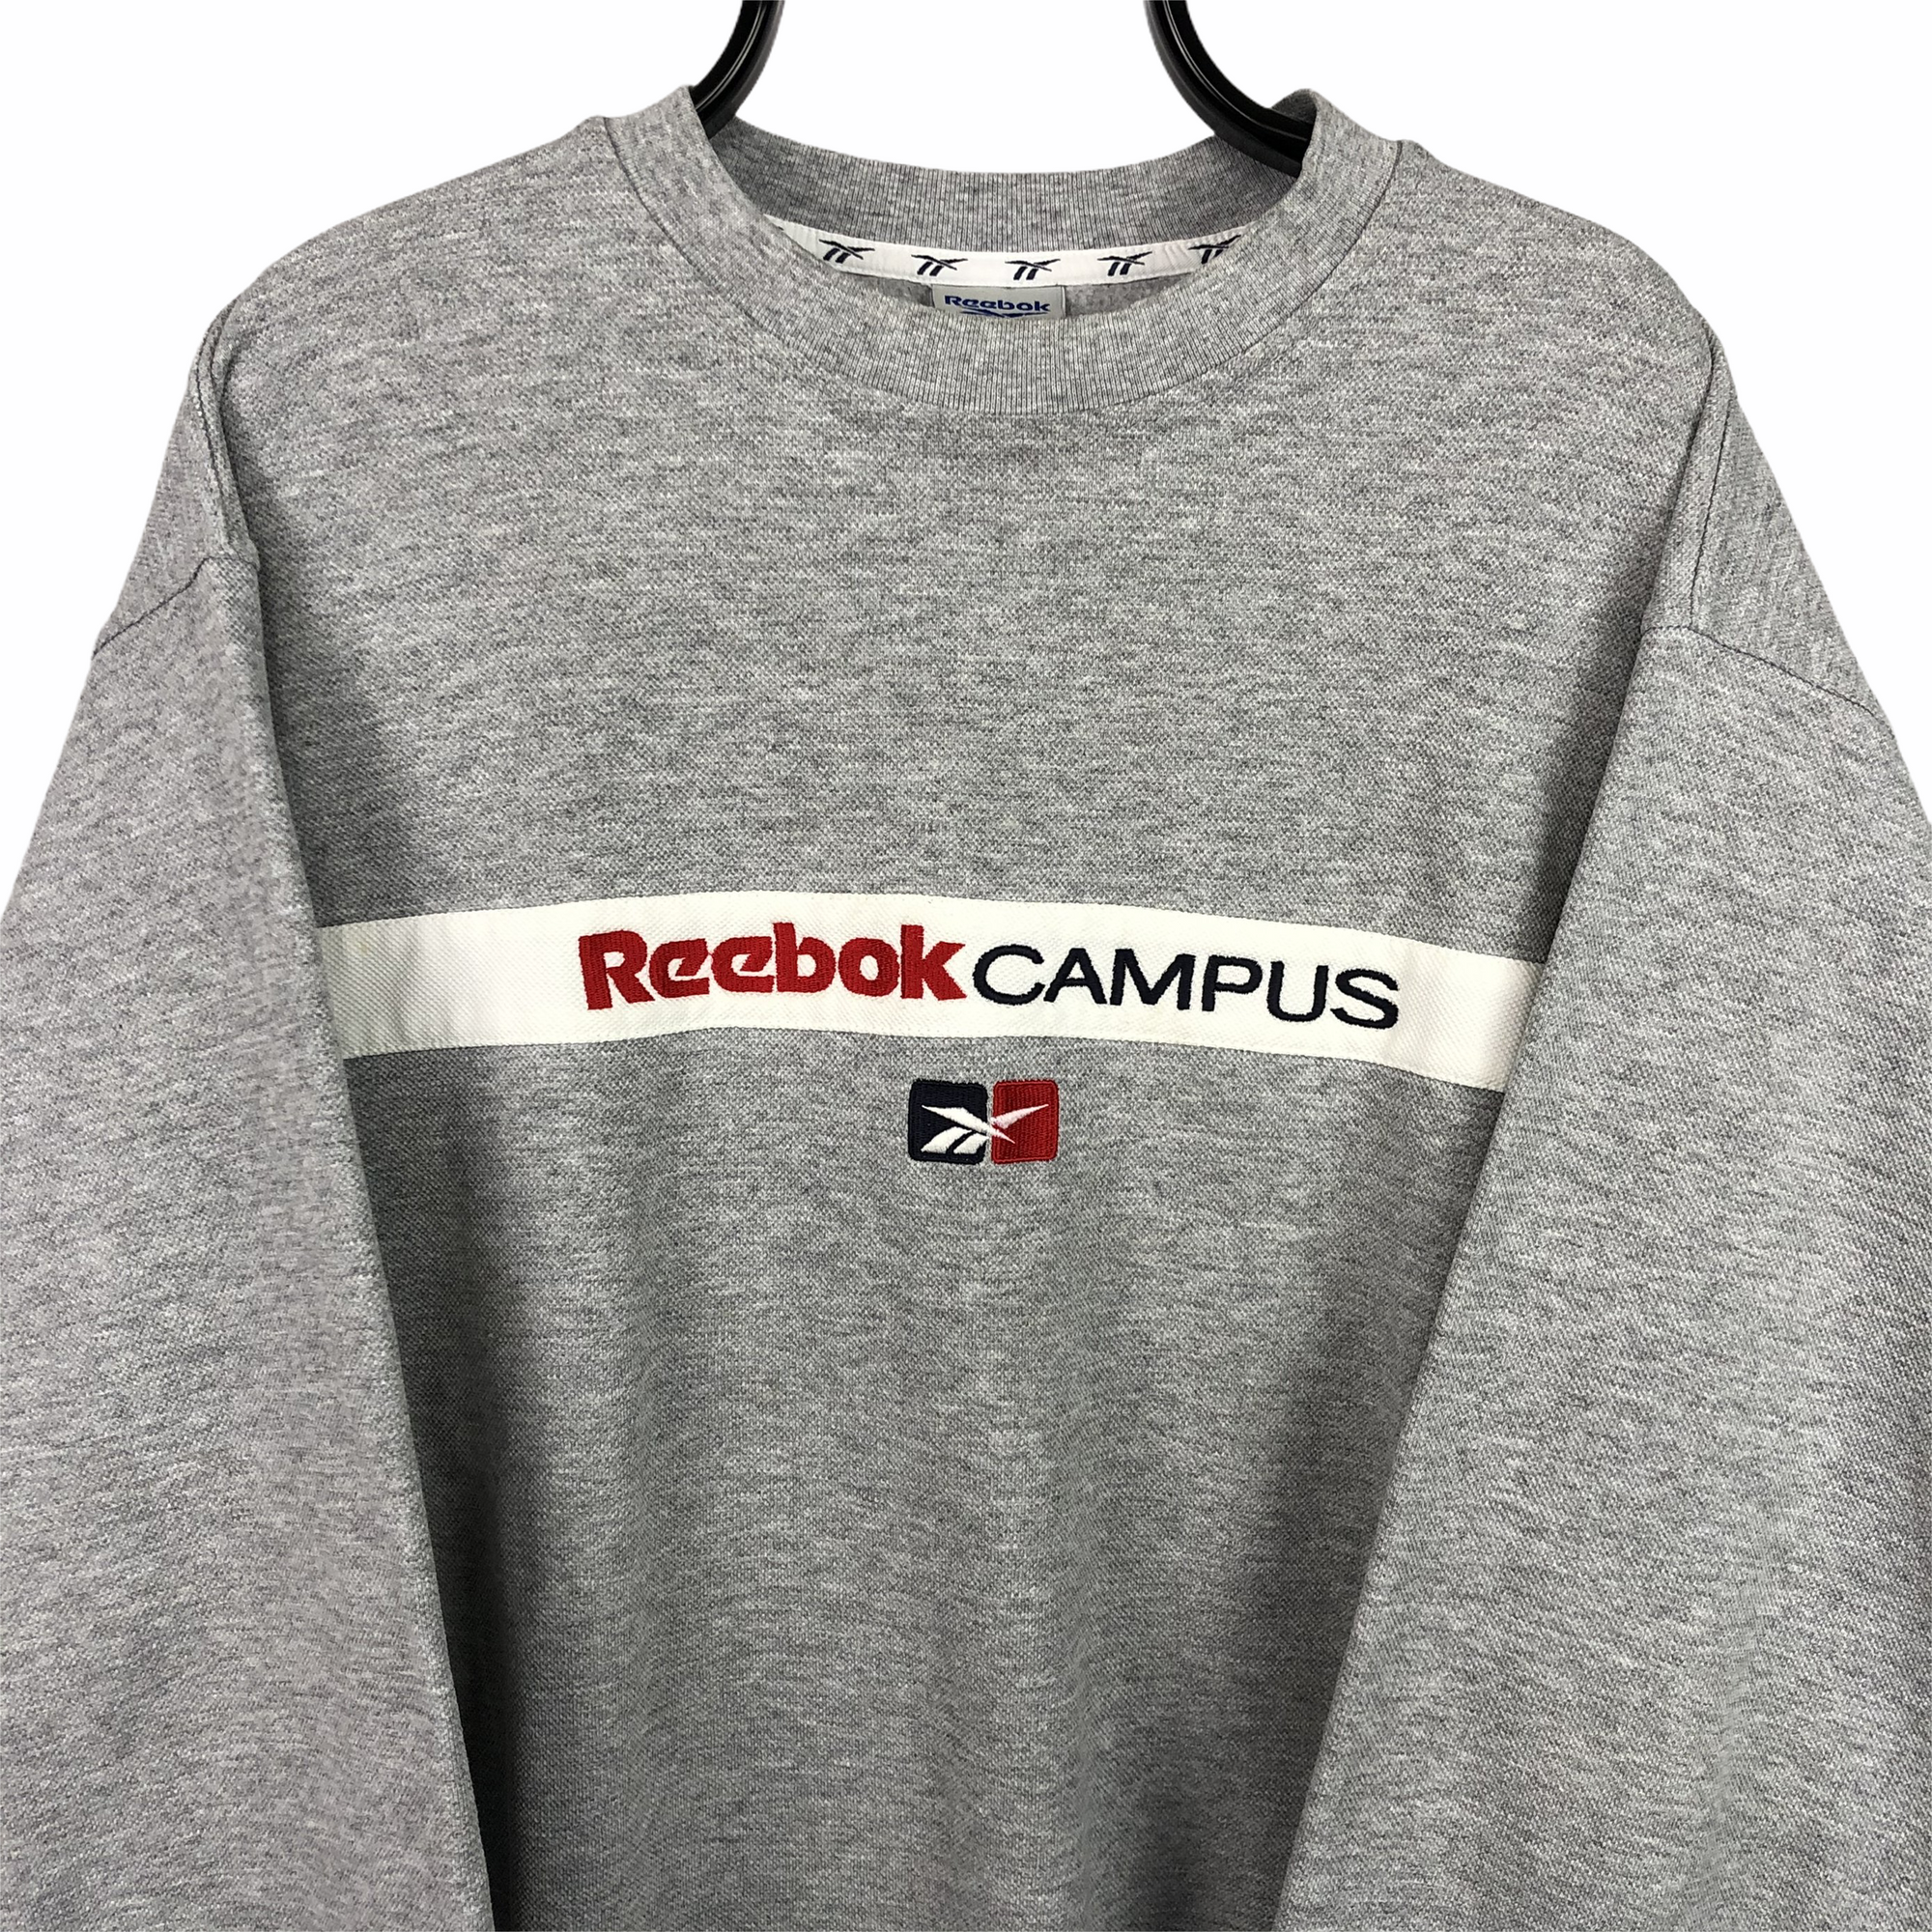 Vintage Reebok Spellout Sweatshirt in Grey - Men's Large/Women's XL